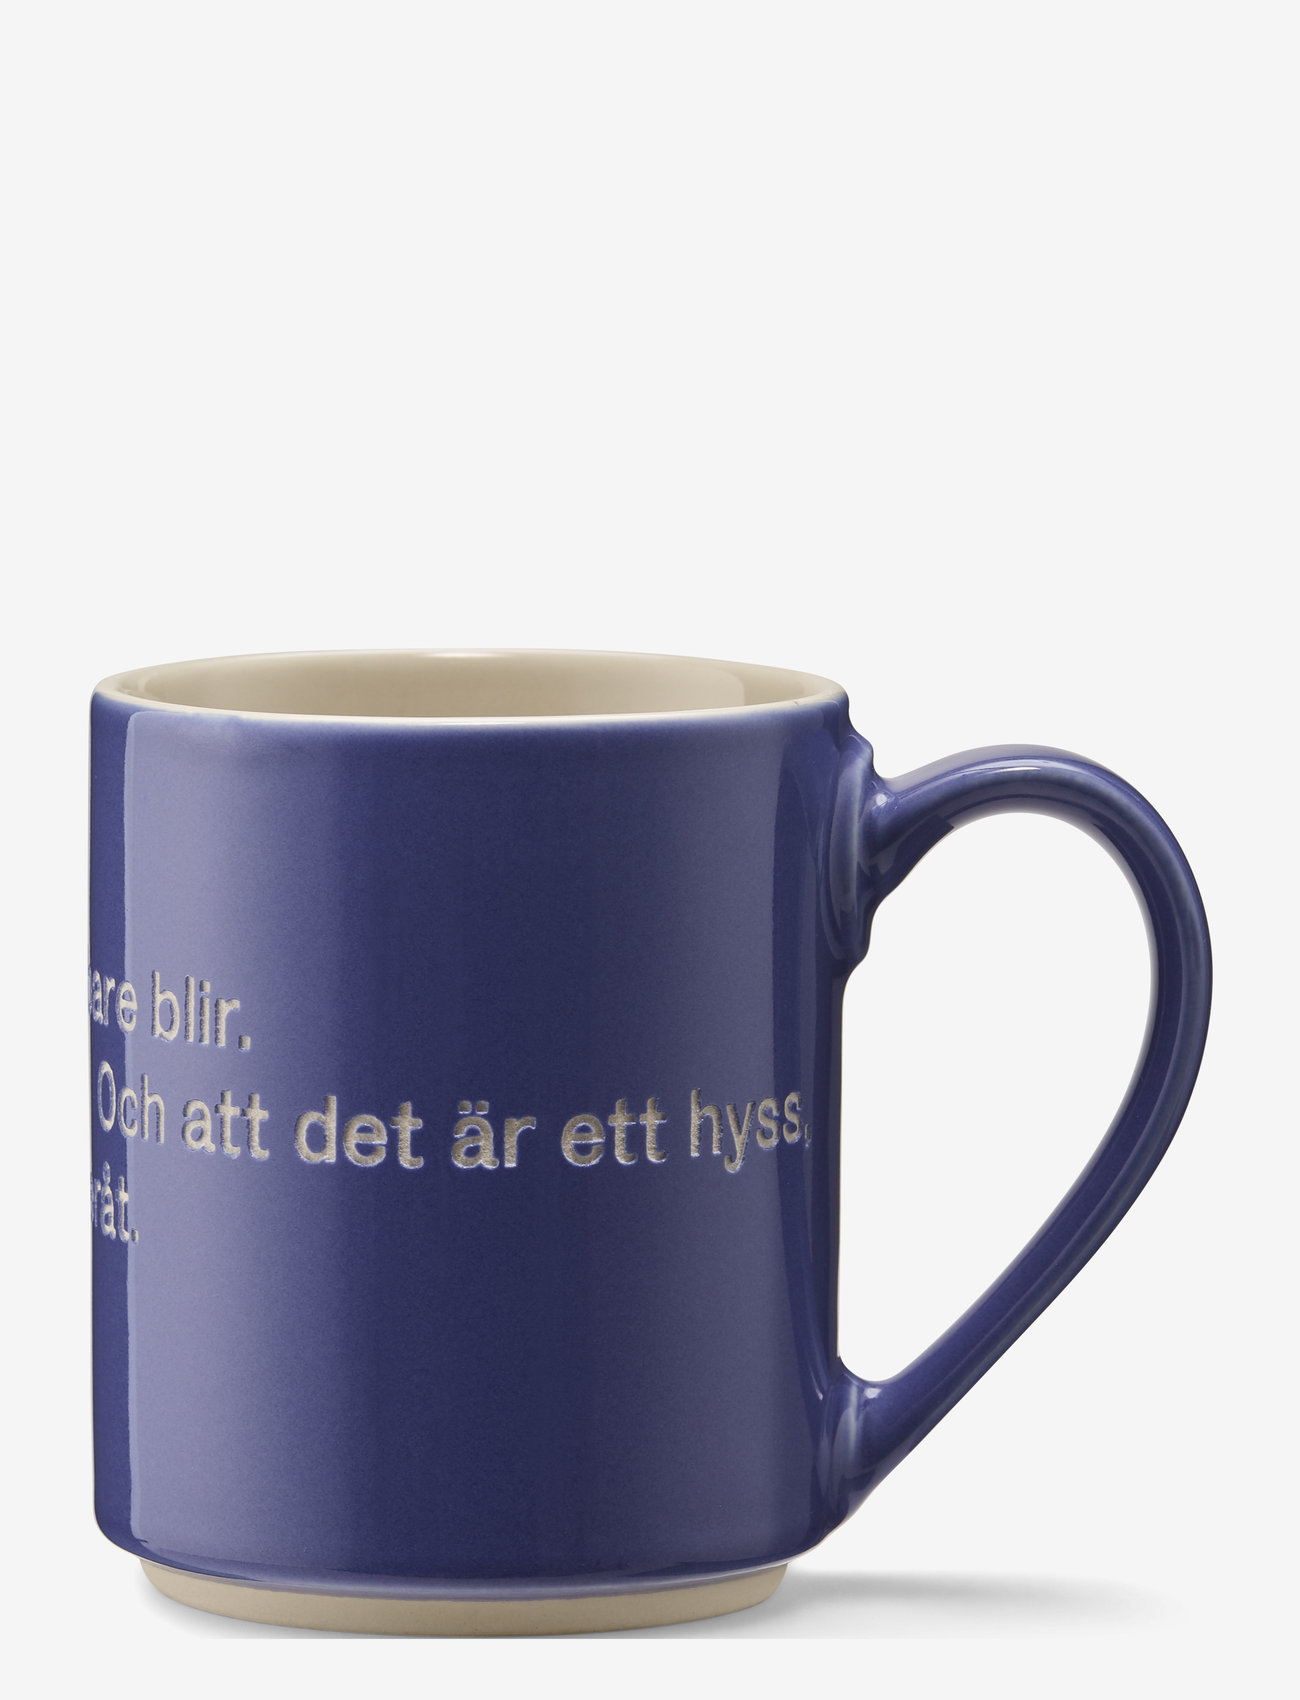 Design House Stockholm - Astrid  Lindgren mug - lowest prices - blue - 1